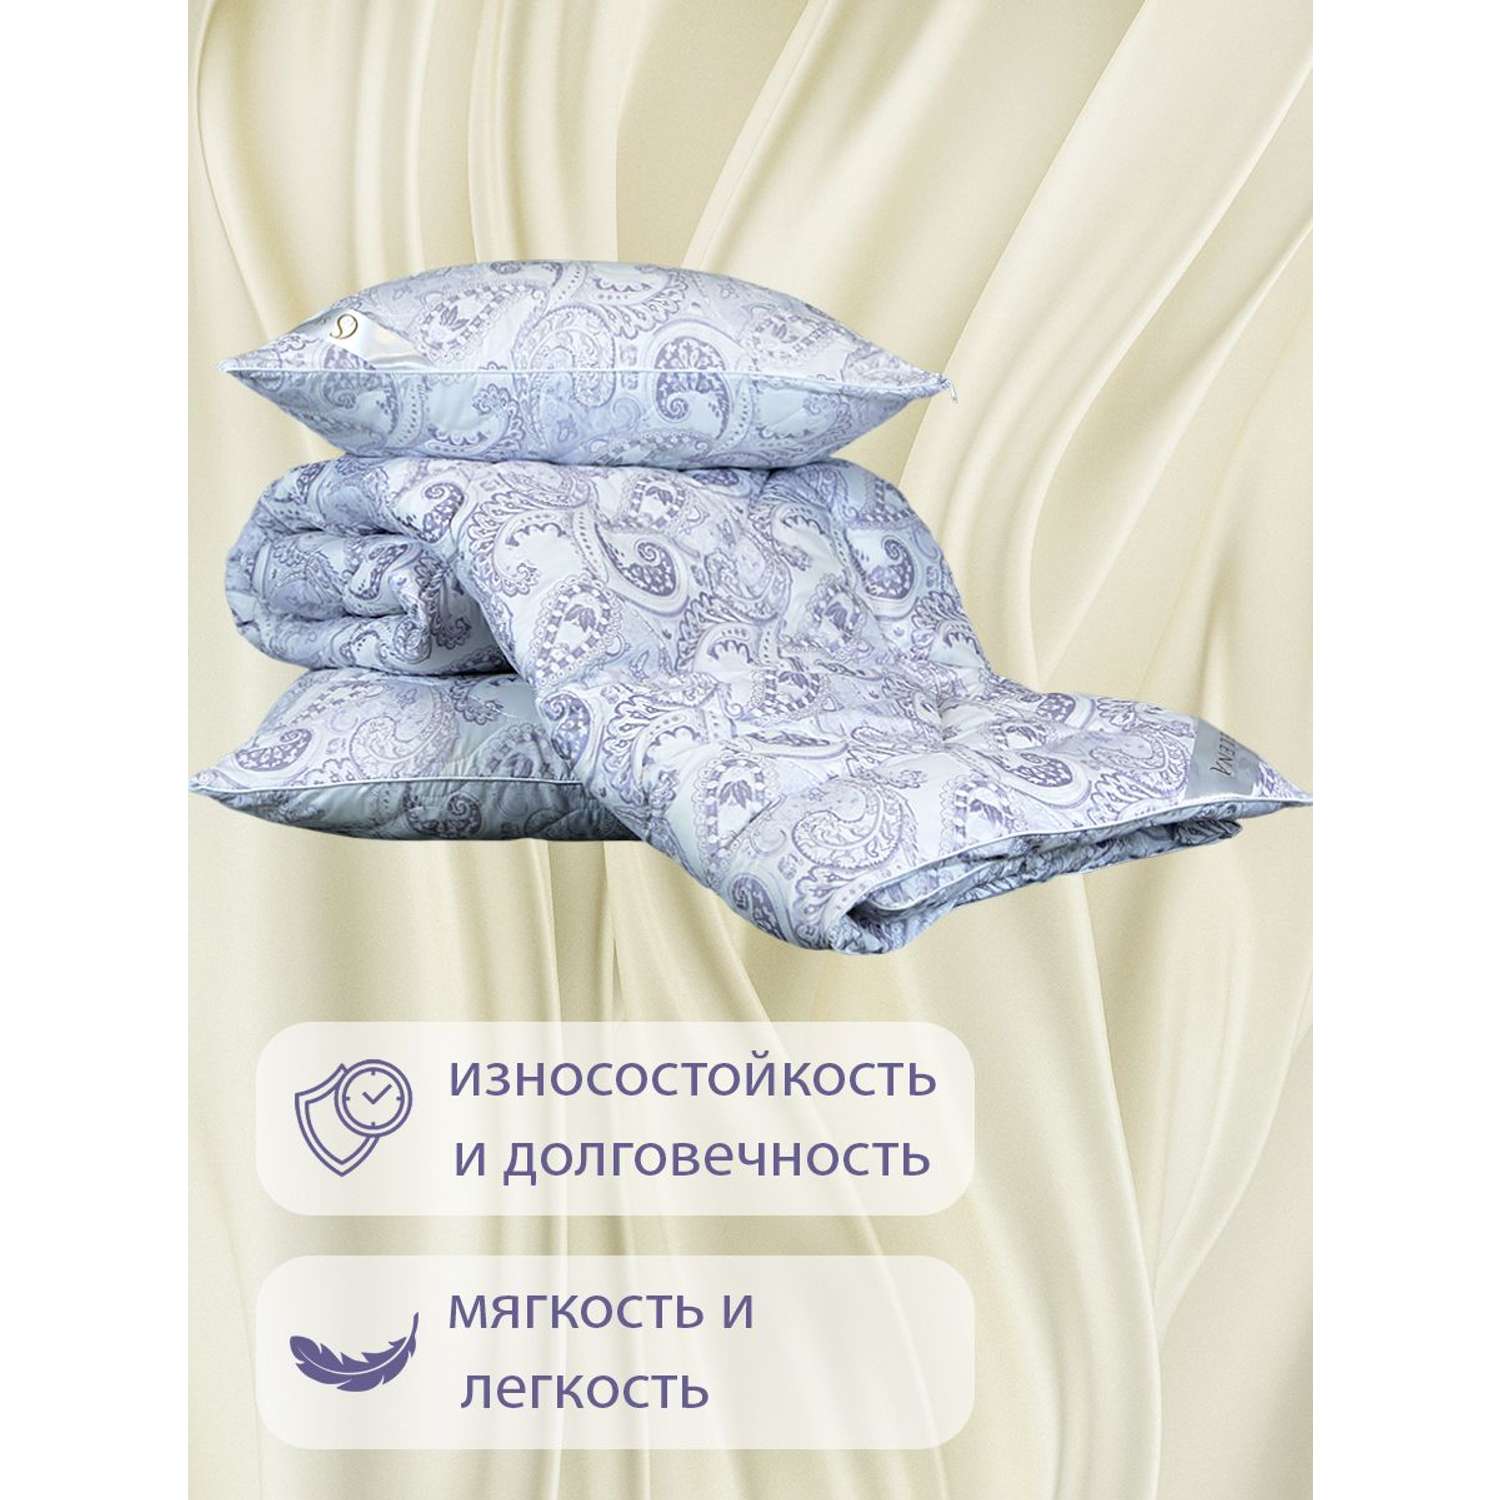 Одеяло SELENA Elegance Line КЕТО Евро 200x215 см всесезонное поплекс 100% наполнитель Лебяжий пух - фото 4